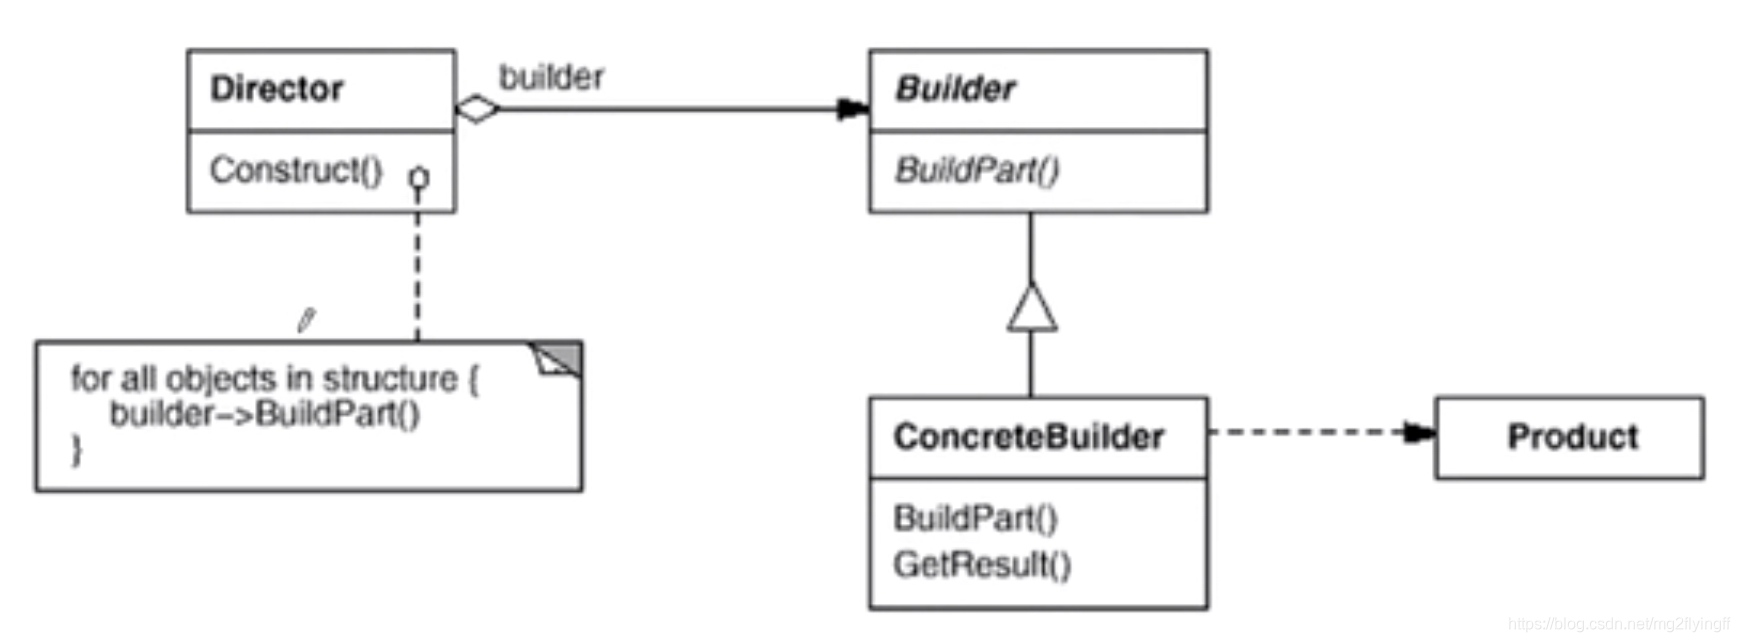 【设计模式】Head First 设计模式——构建器模式 C++实现